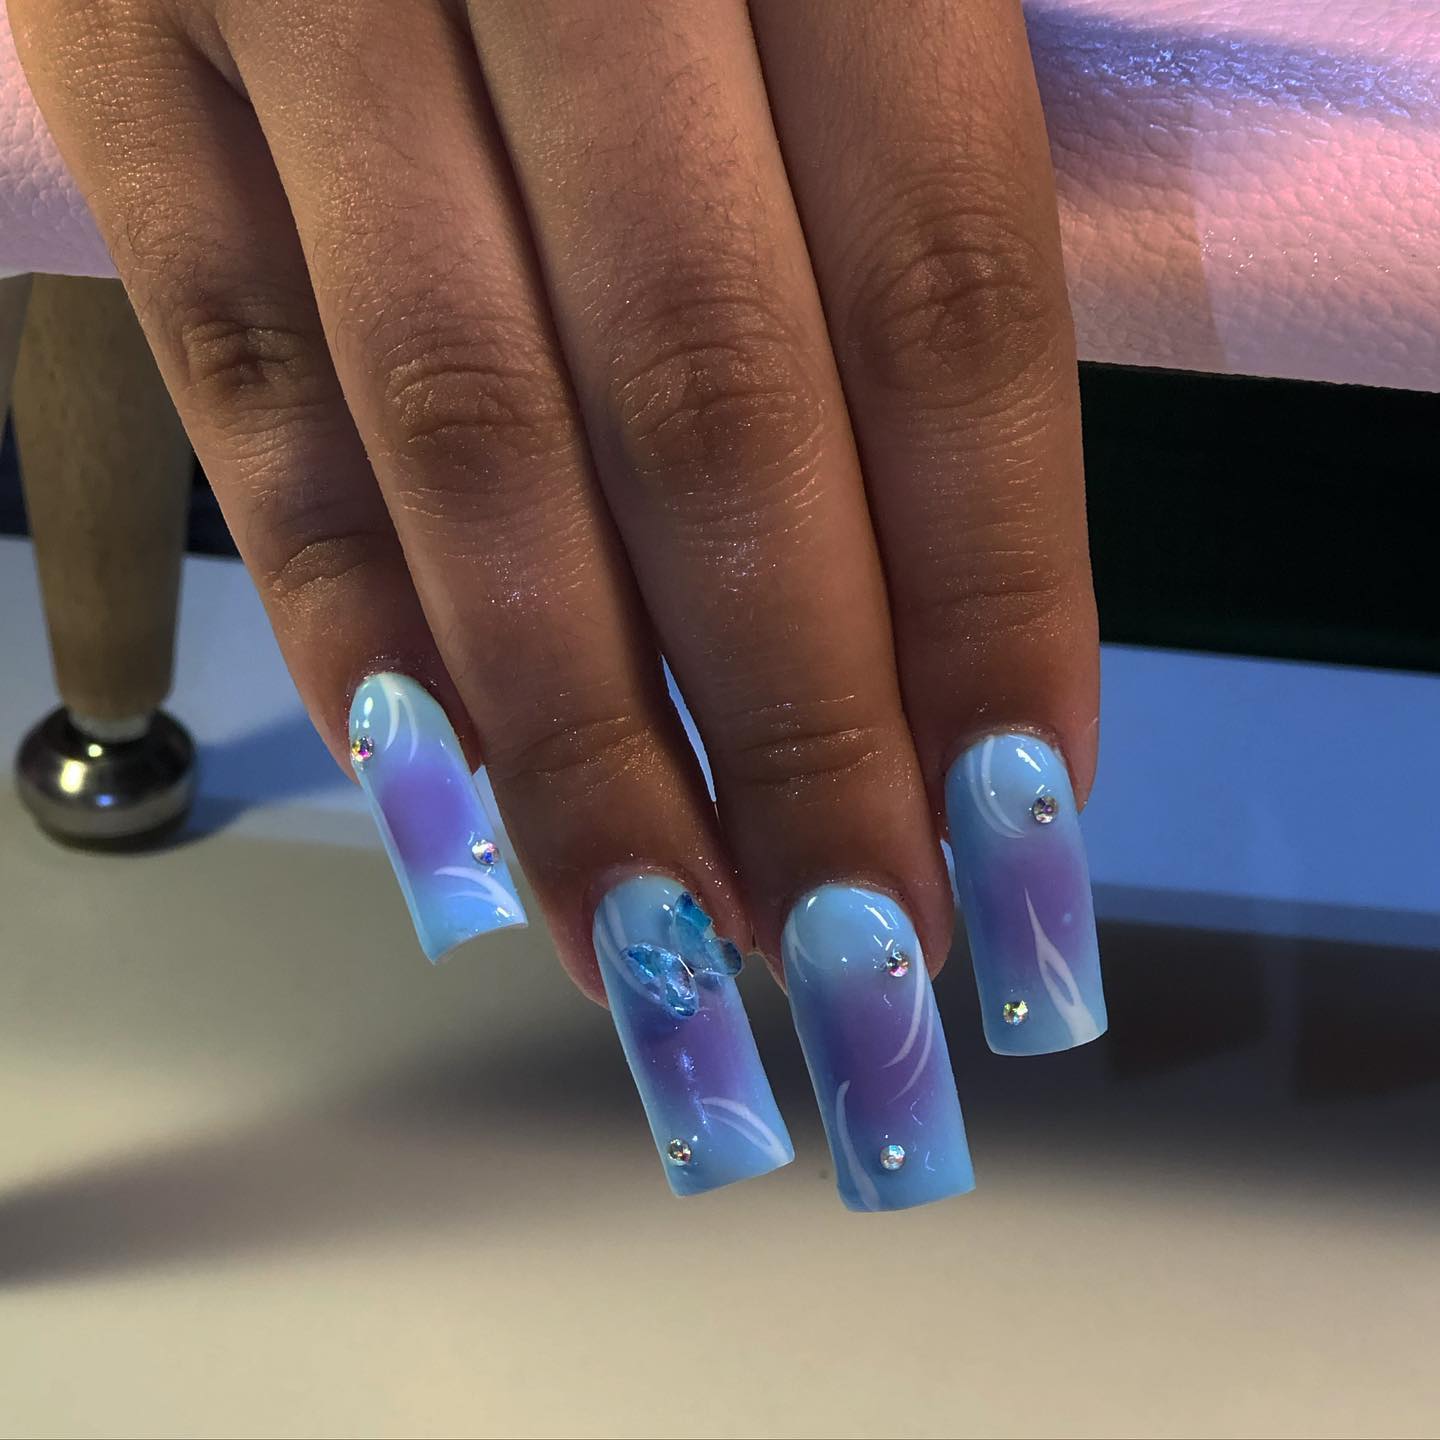 Selfmade blue nails : r/NailArt